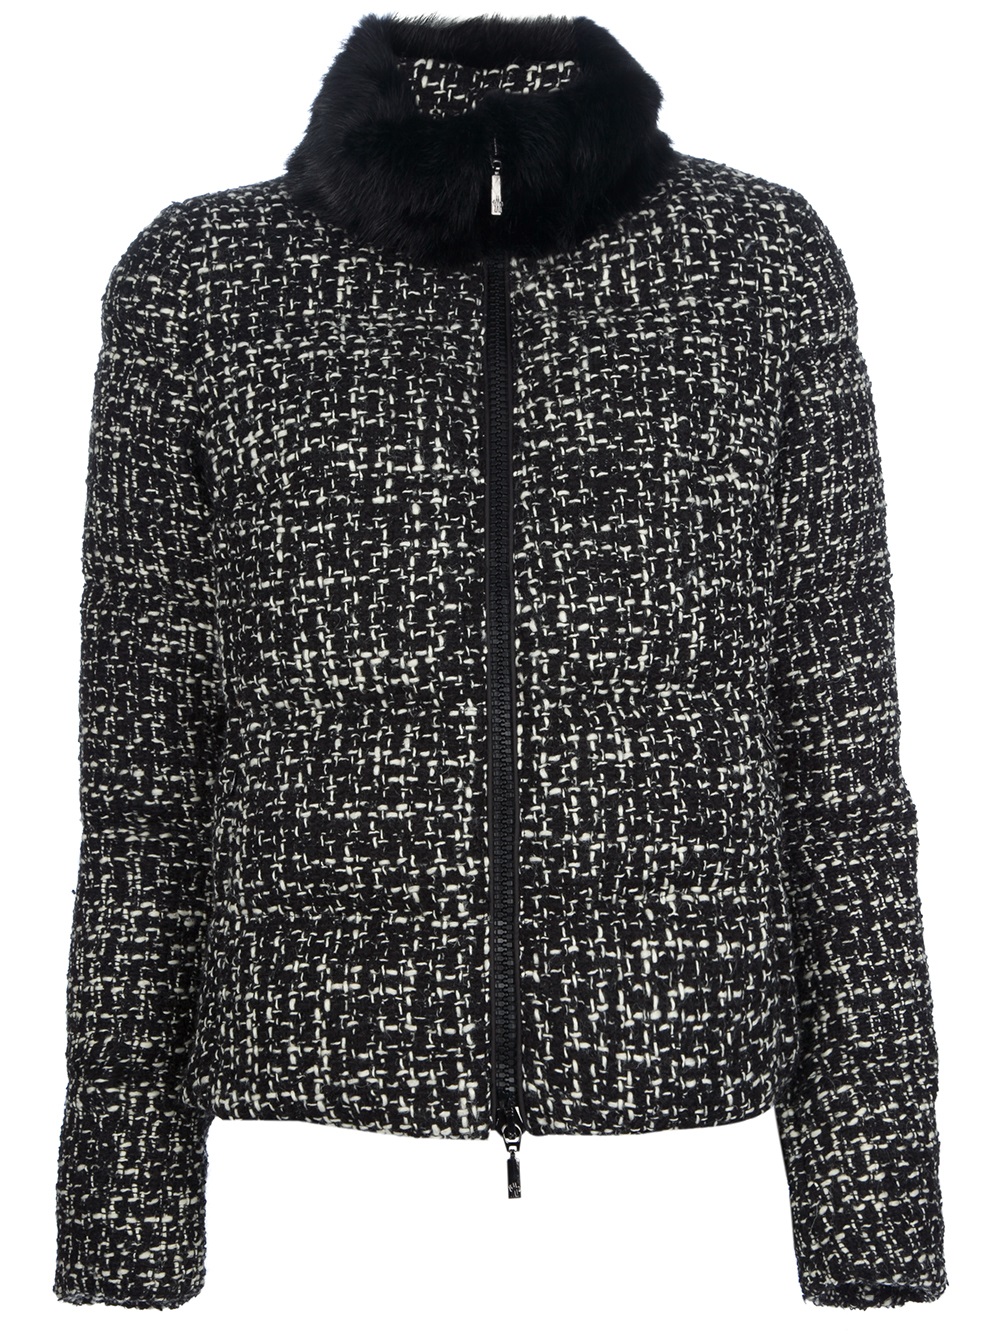 Lyst - Moncler Tweed Jacket in Black